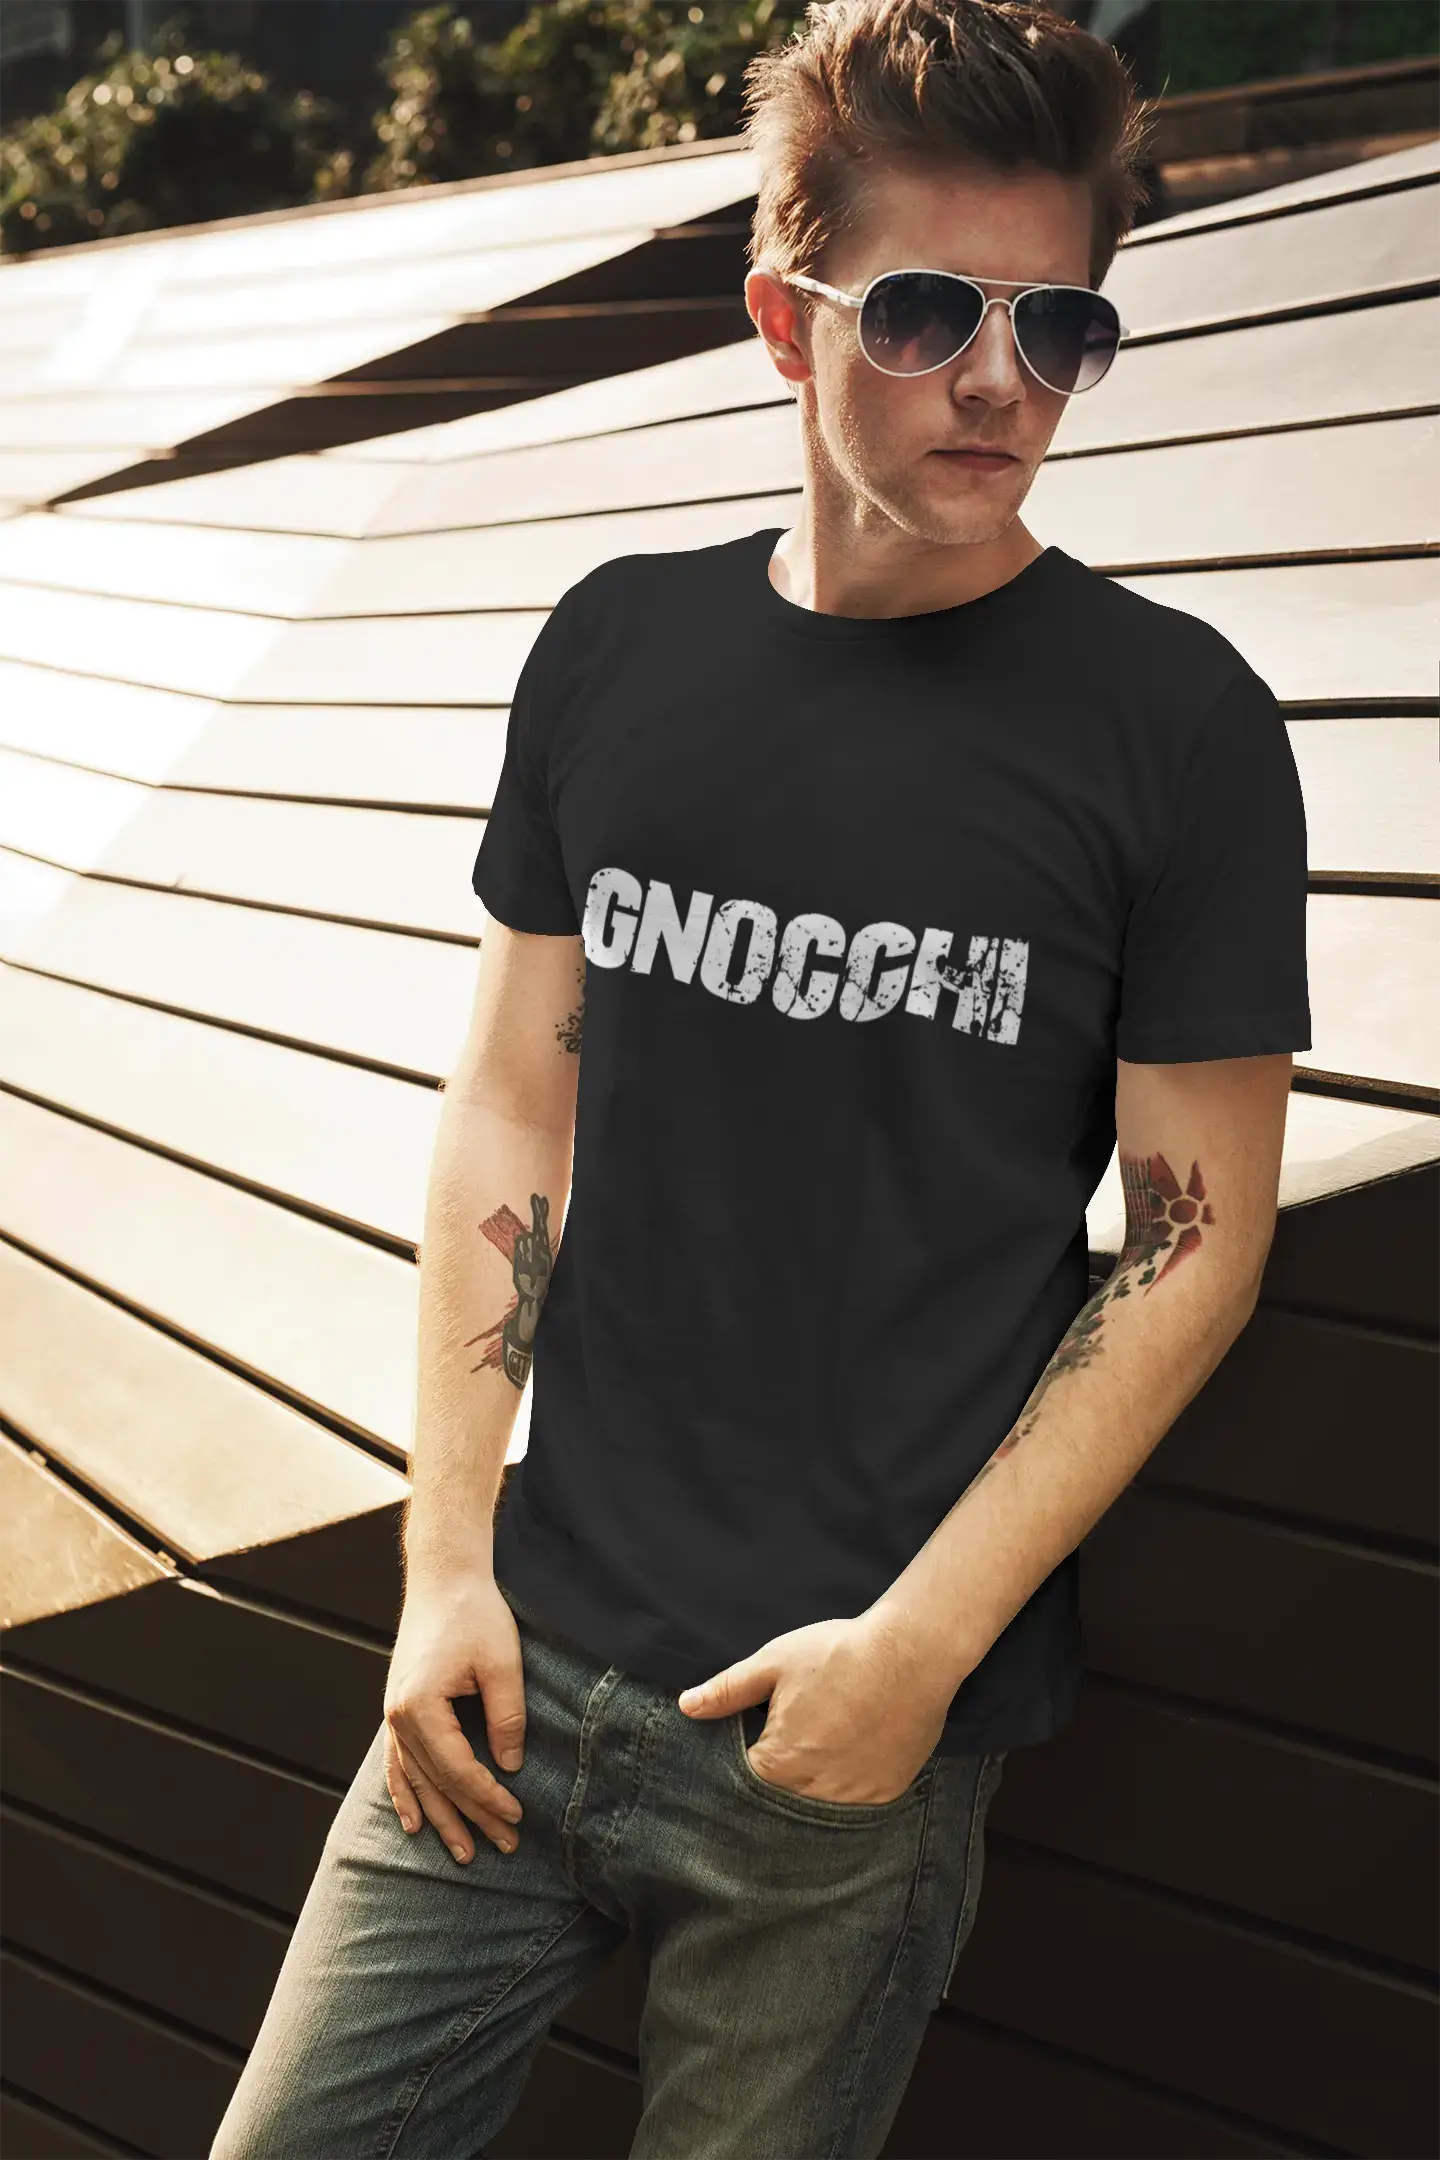 Herren-T-Shirt mit grafischem Aufdruck, Vintage-T-Shirt Gnocchi